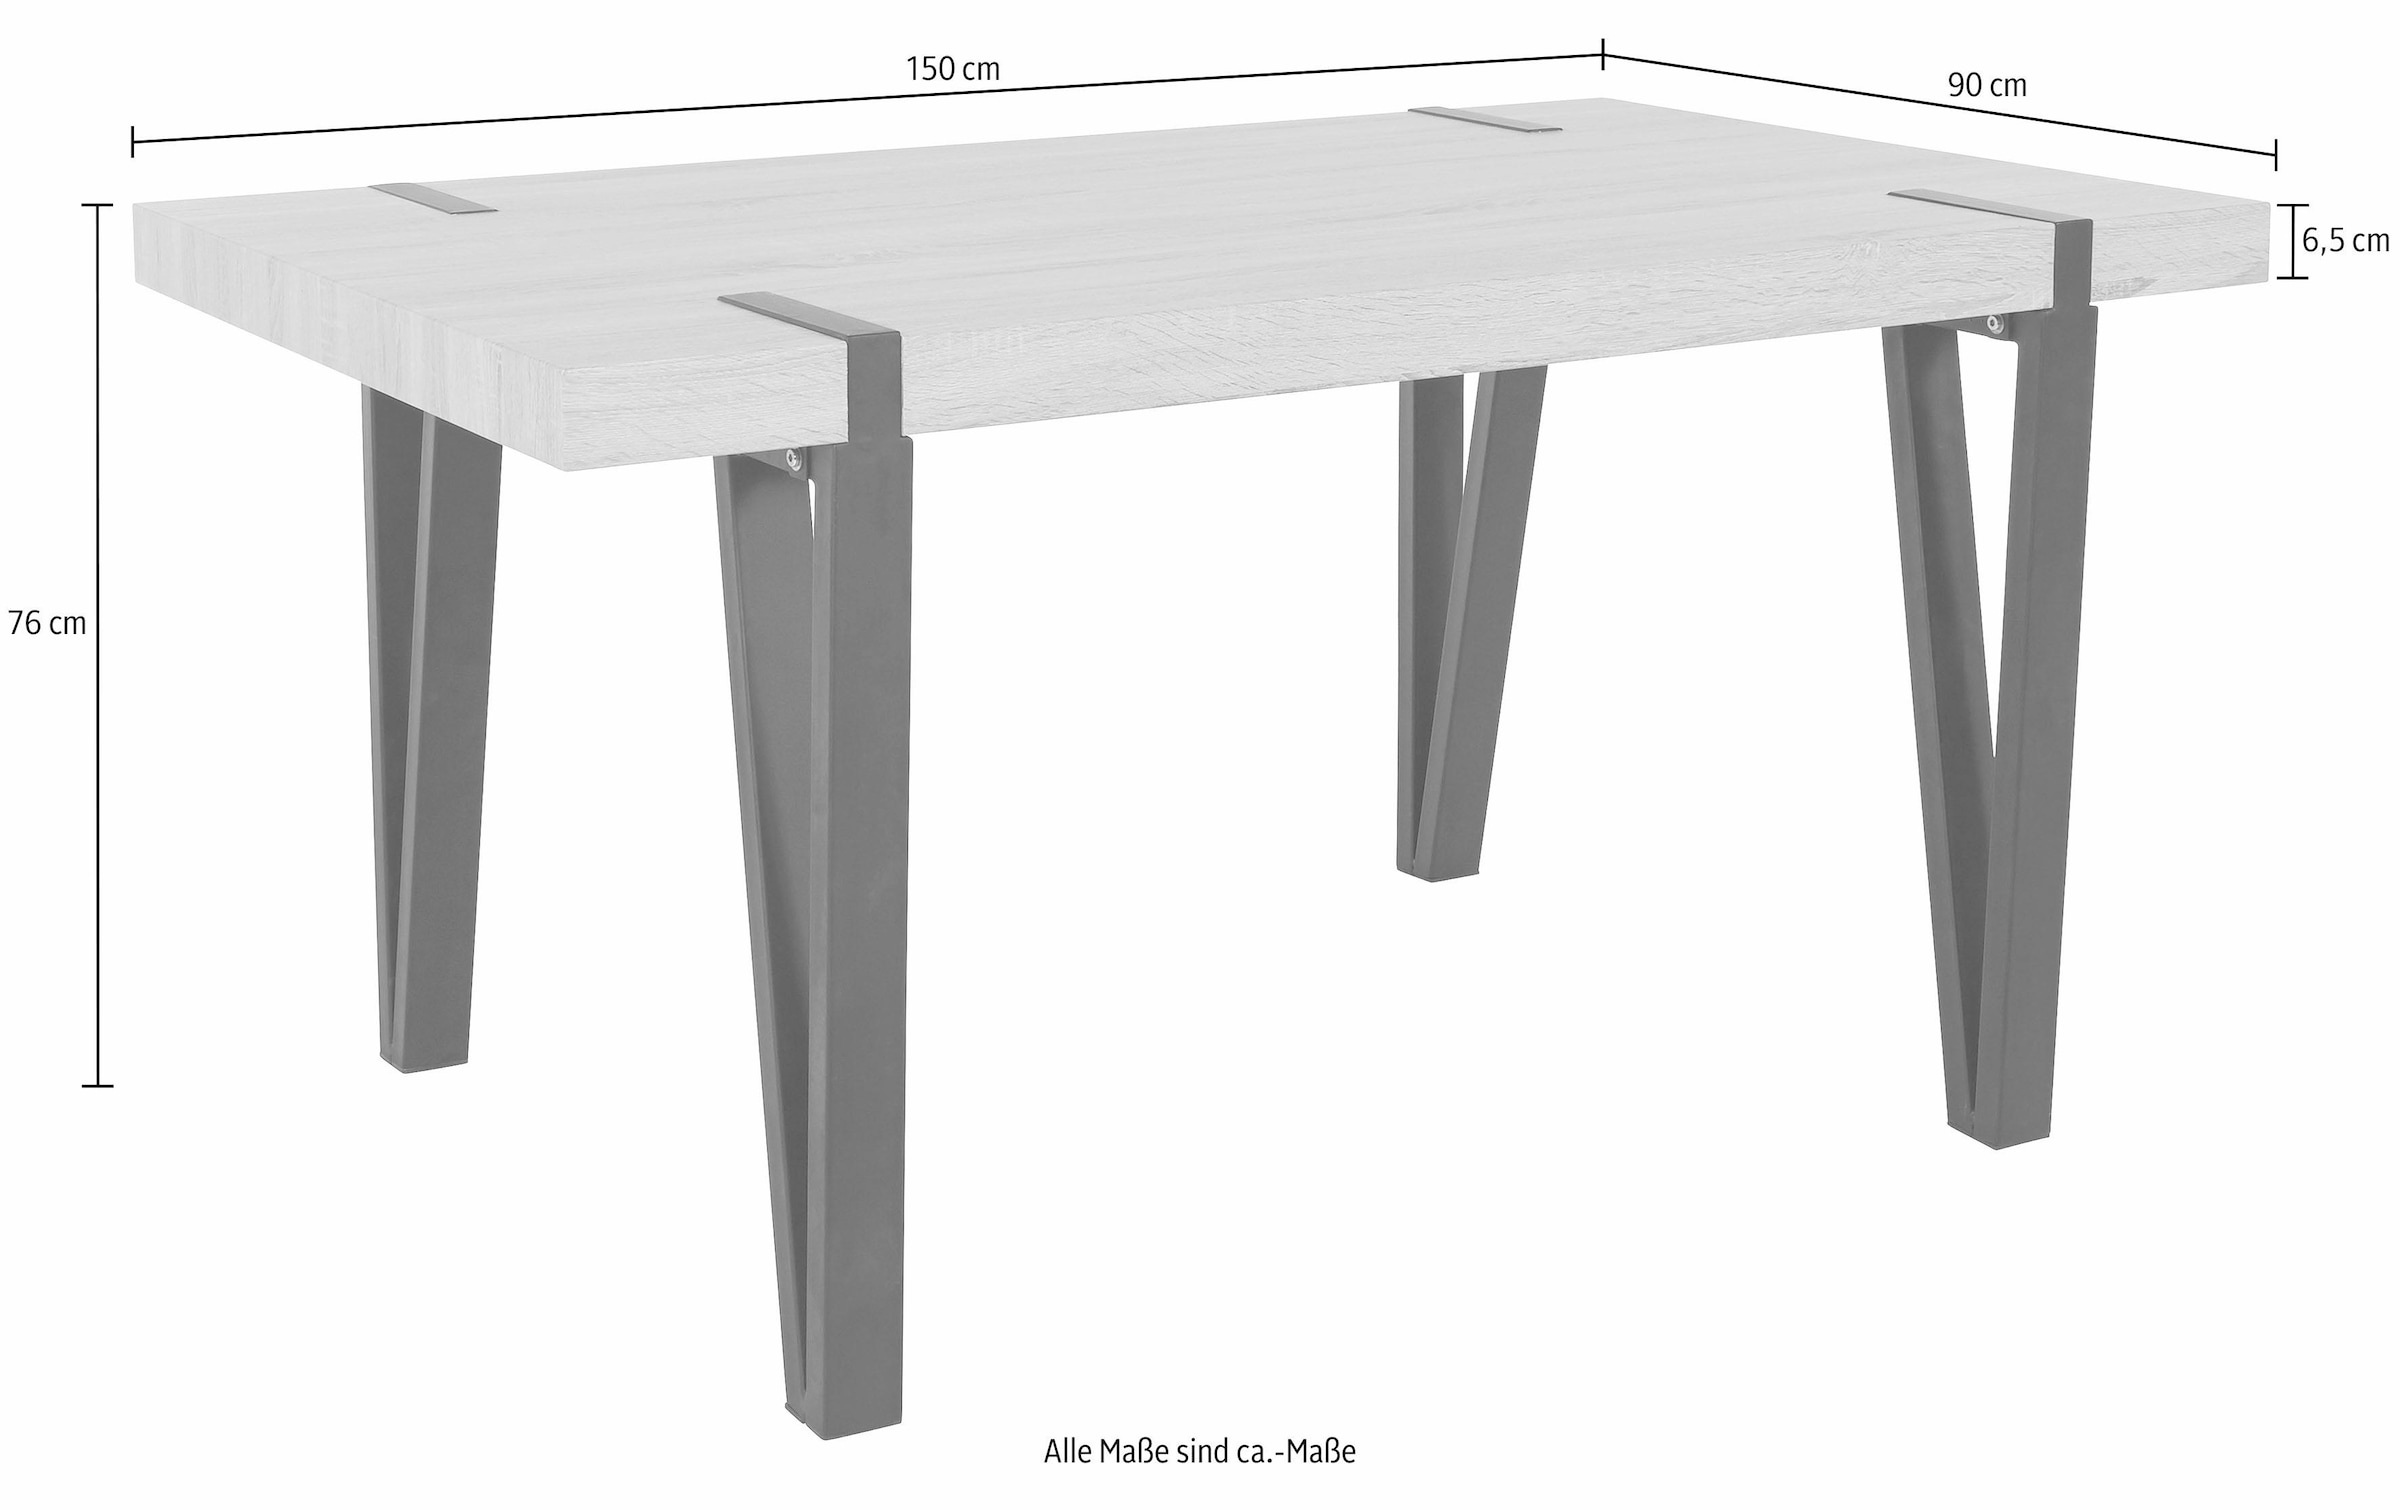 Home affaire Essgruppe »Sanchez und Bradford«, (Set, 5 tlg.), mit Tisch, Breite 150 cm